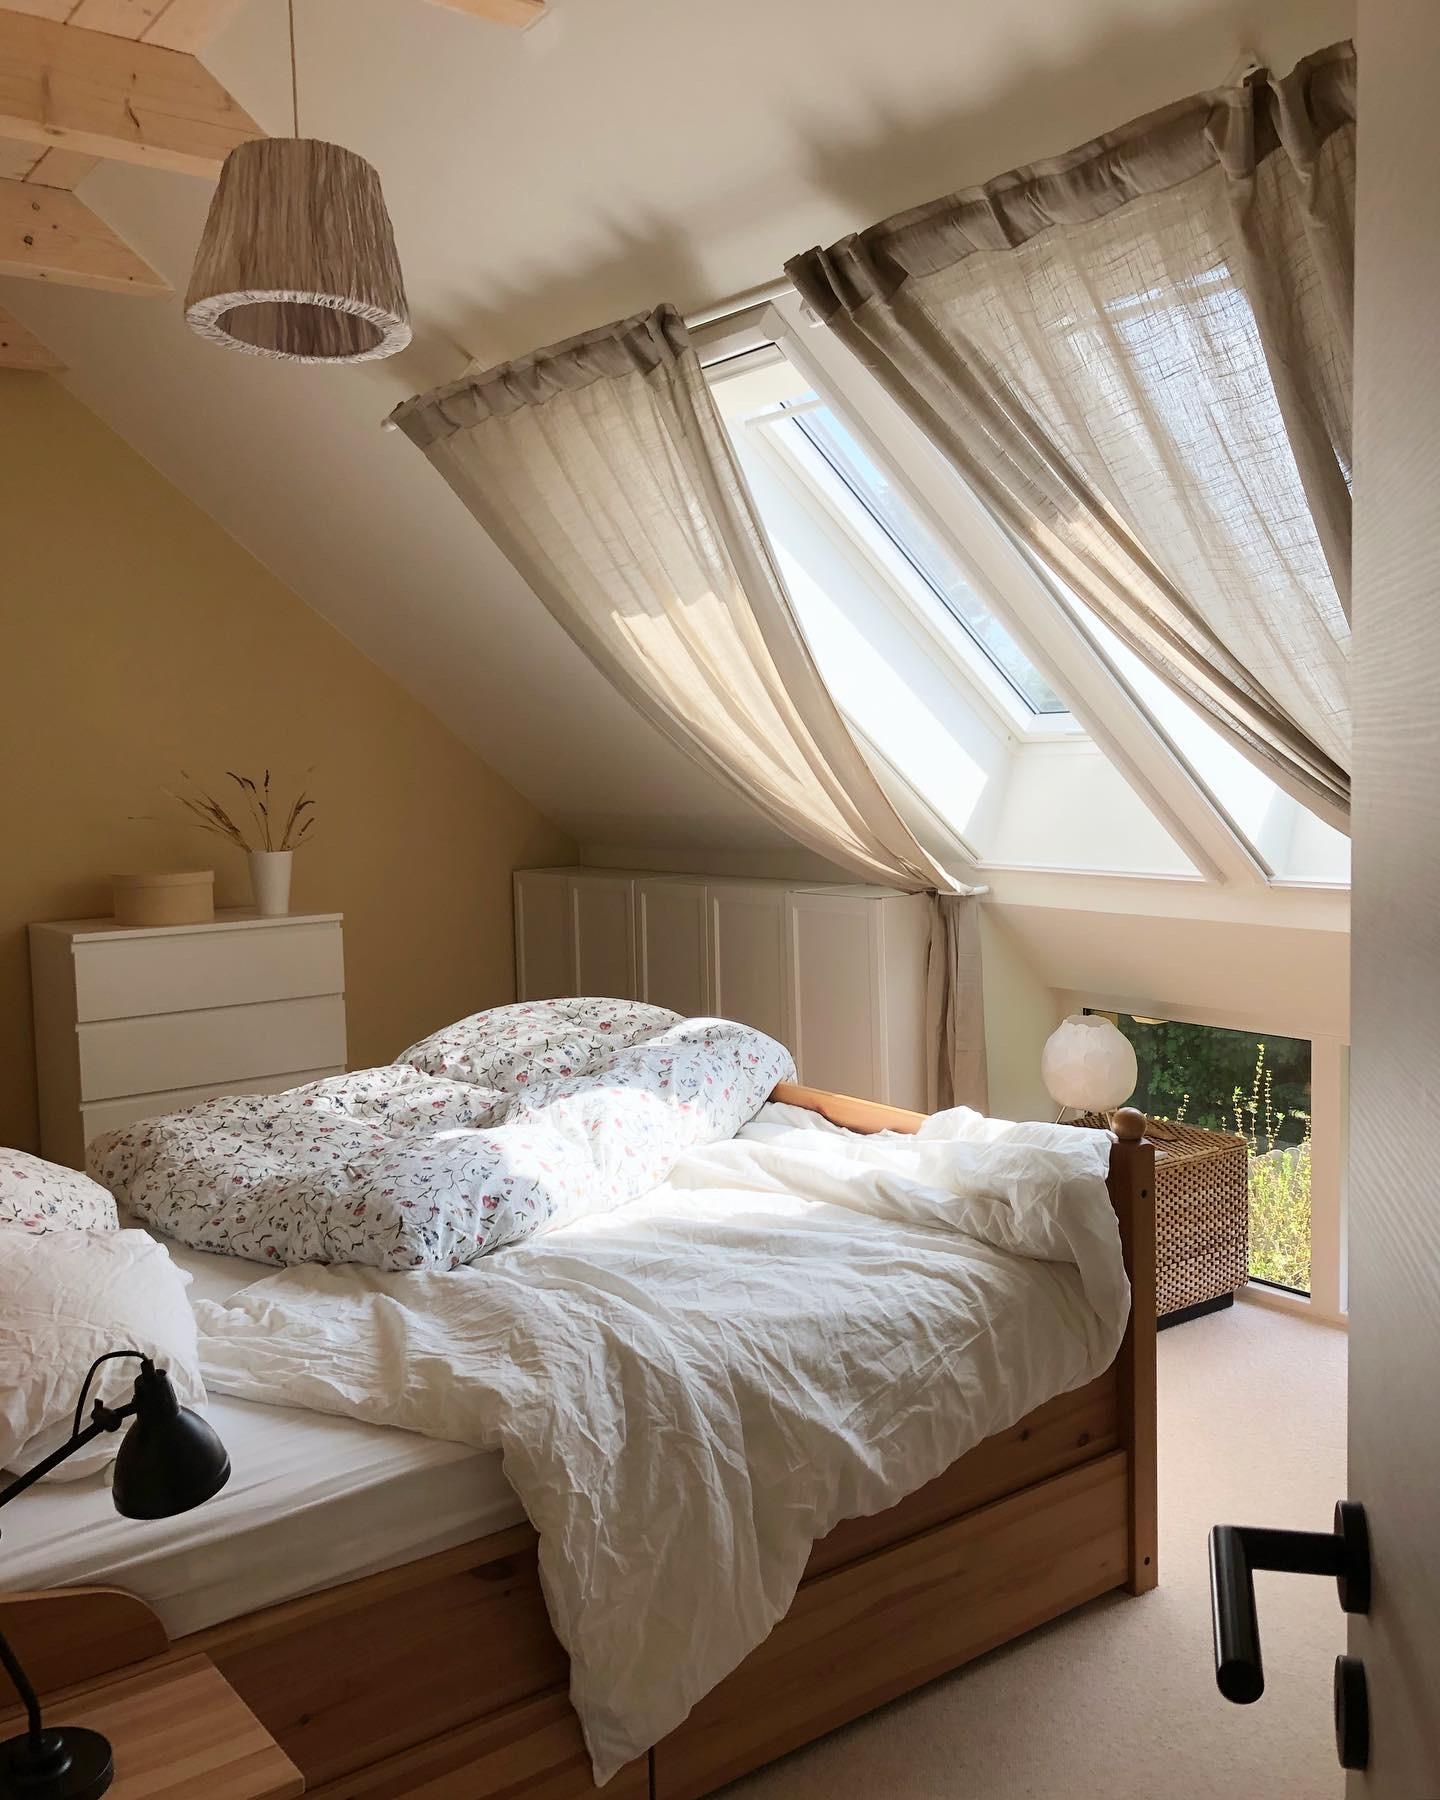 Ich liebe es, wenn morgens die Sonne ins Schlafzimmer scheint ☀️
#schlafzimmer #livingchallenge #cozy #bedroom #sonne